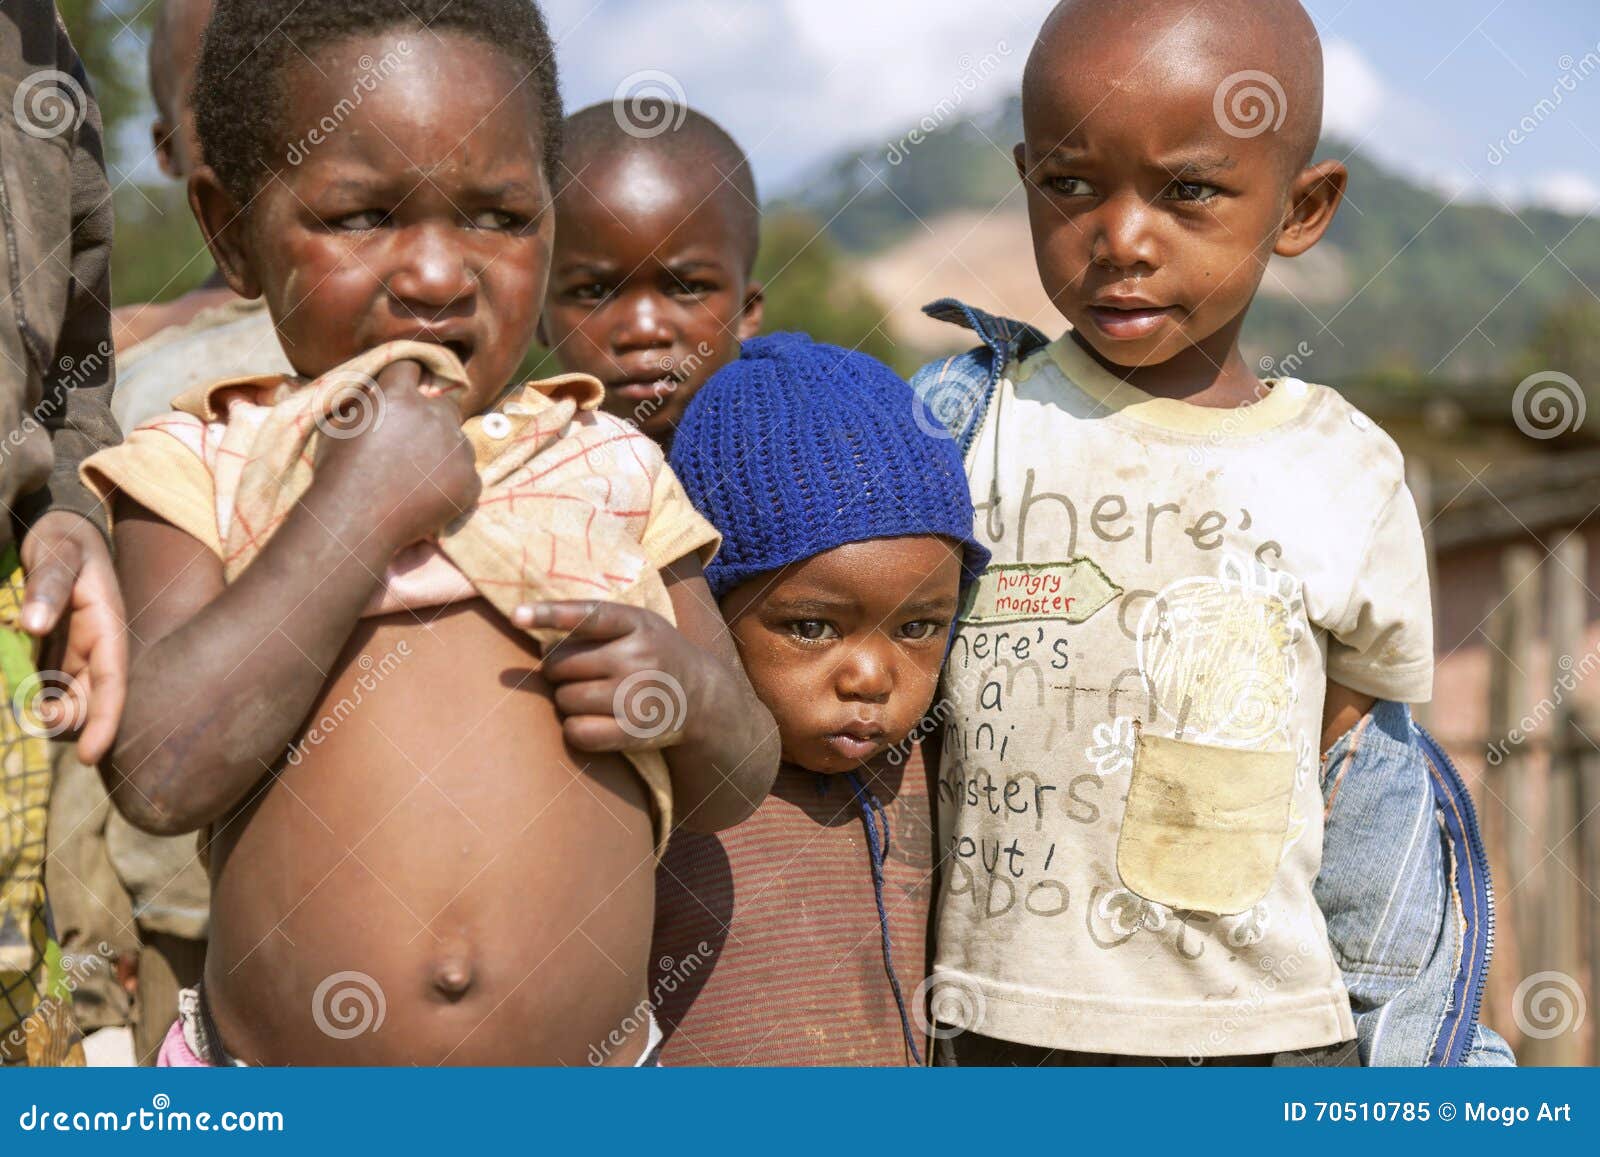 Ruhengeri Rwanda September 7 2015 Unidentified Stock Photo 